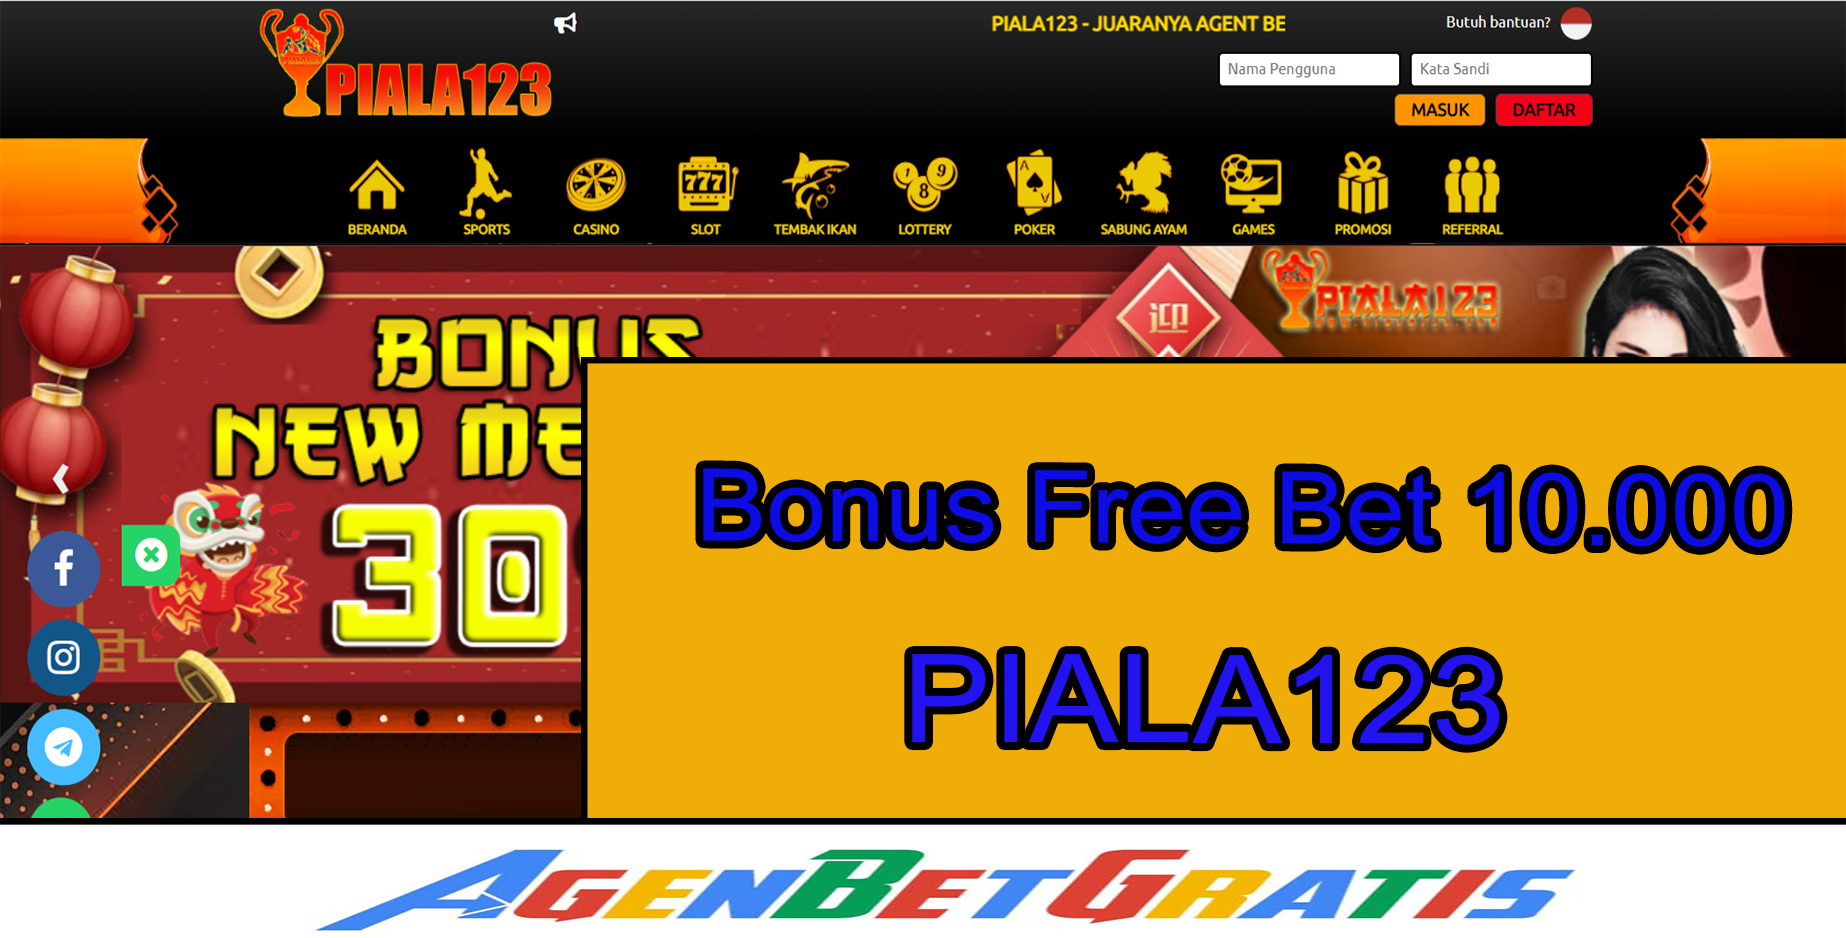 PIALA123 - Bonus FreeBet 10.000